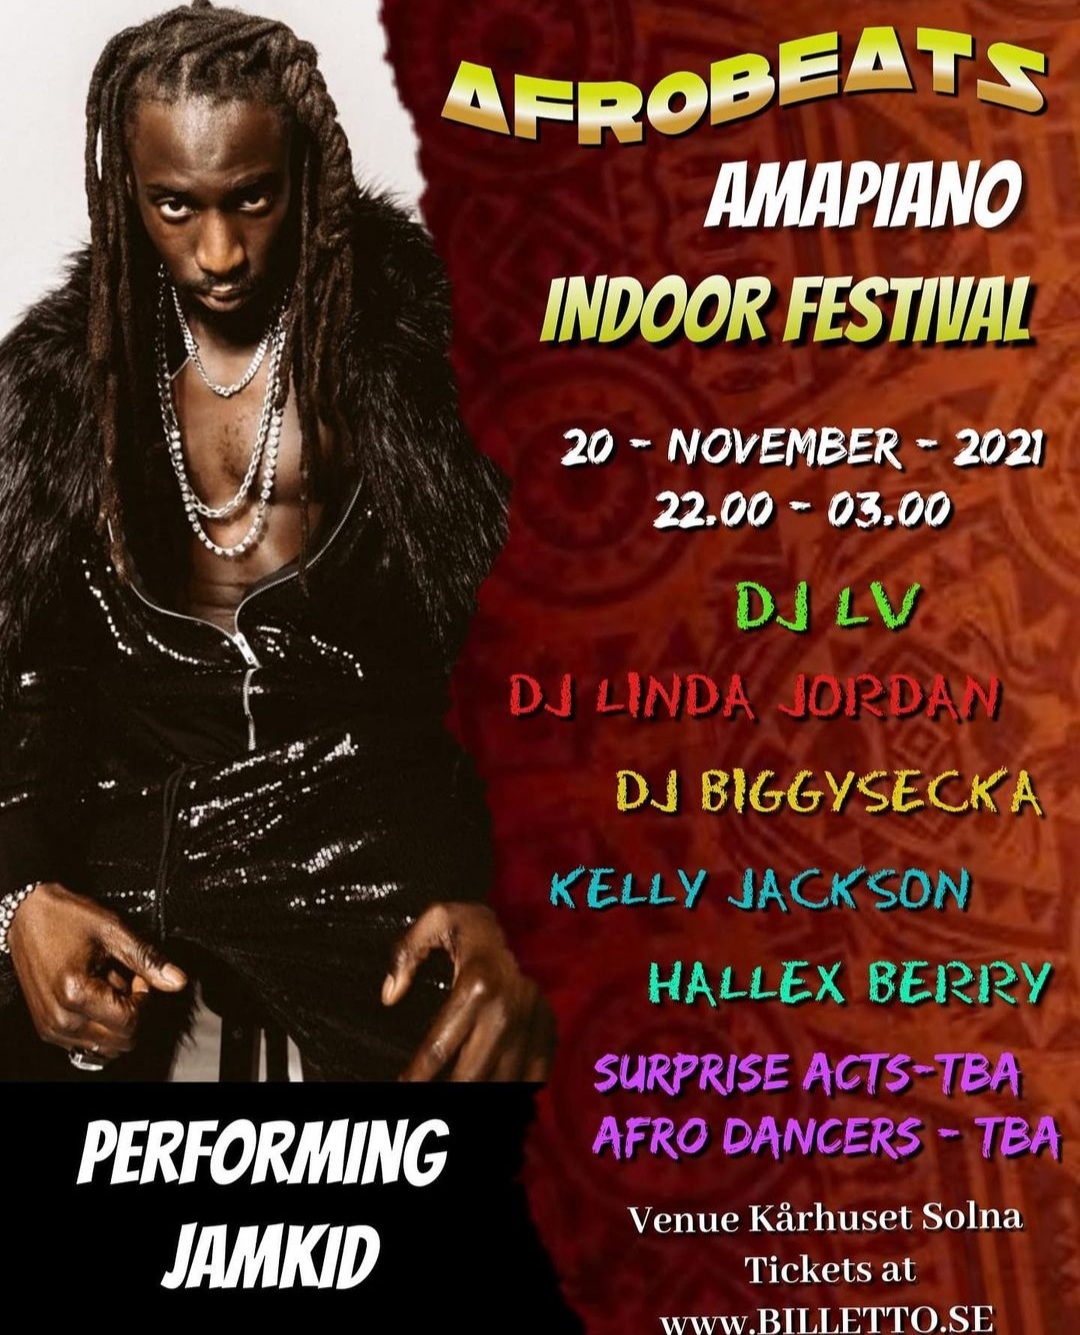 EVENEMANG! Afrobeats, amapiano Indoor Festival (Stockholm)